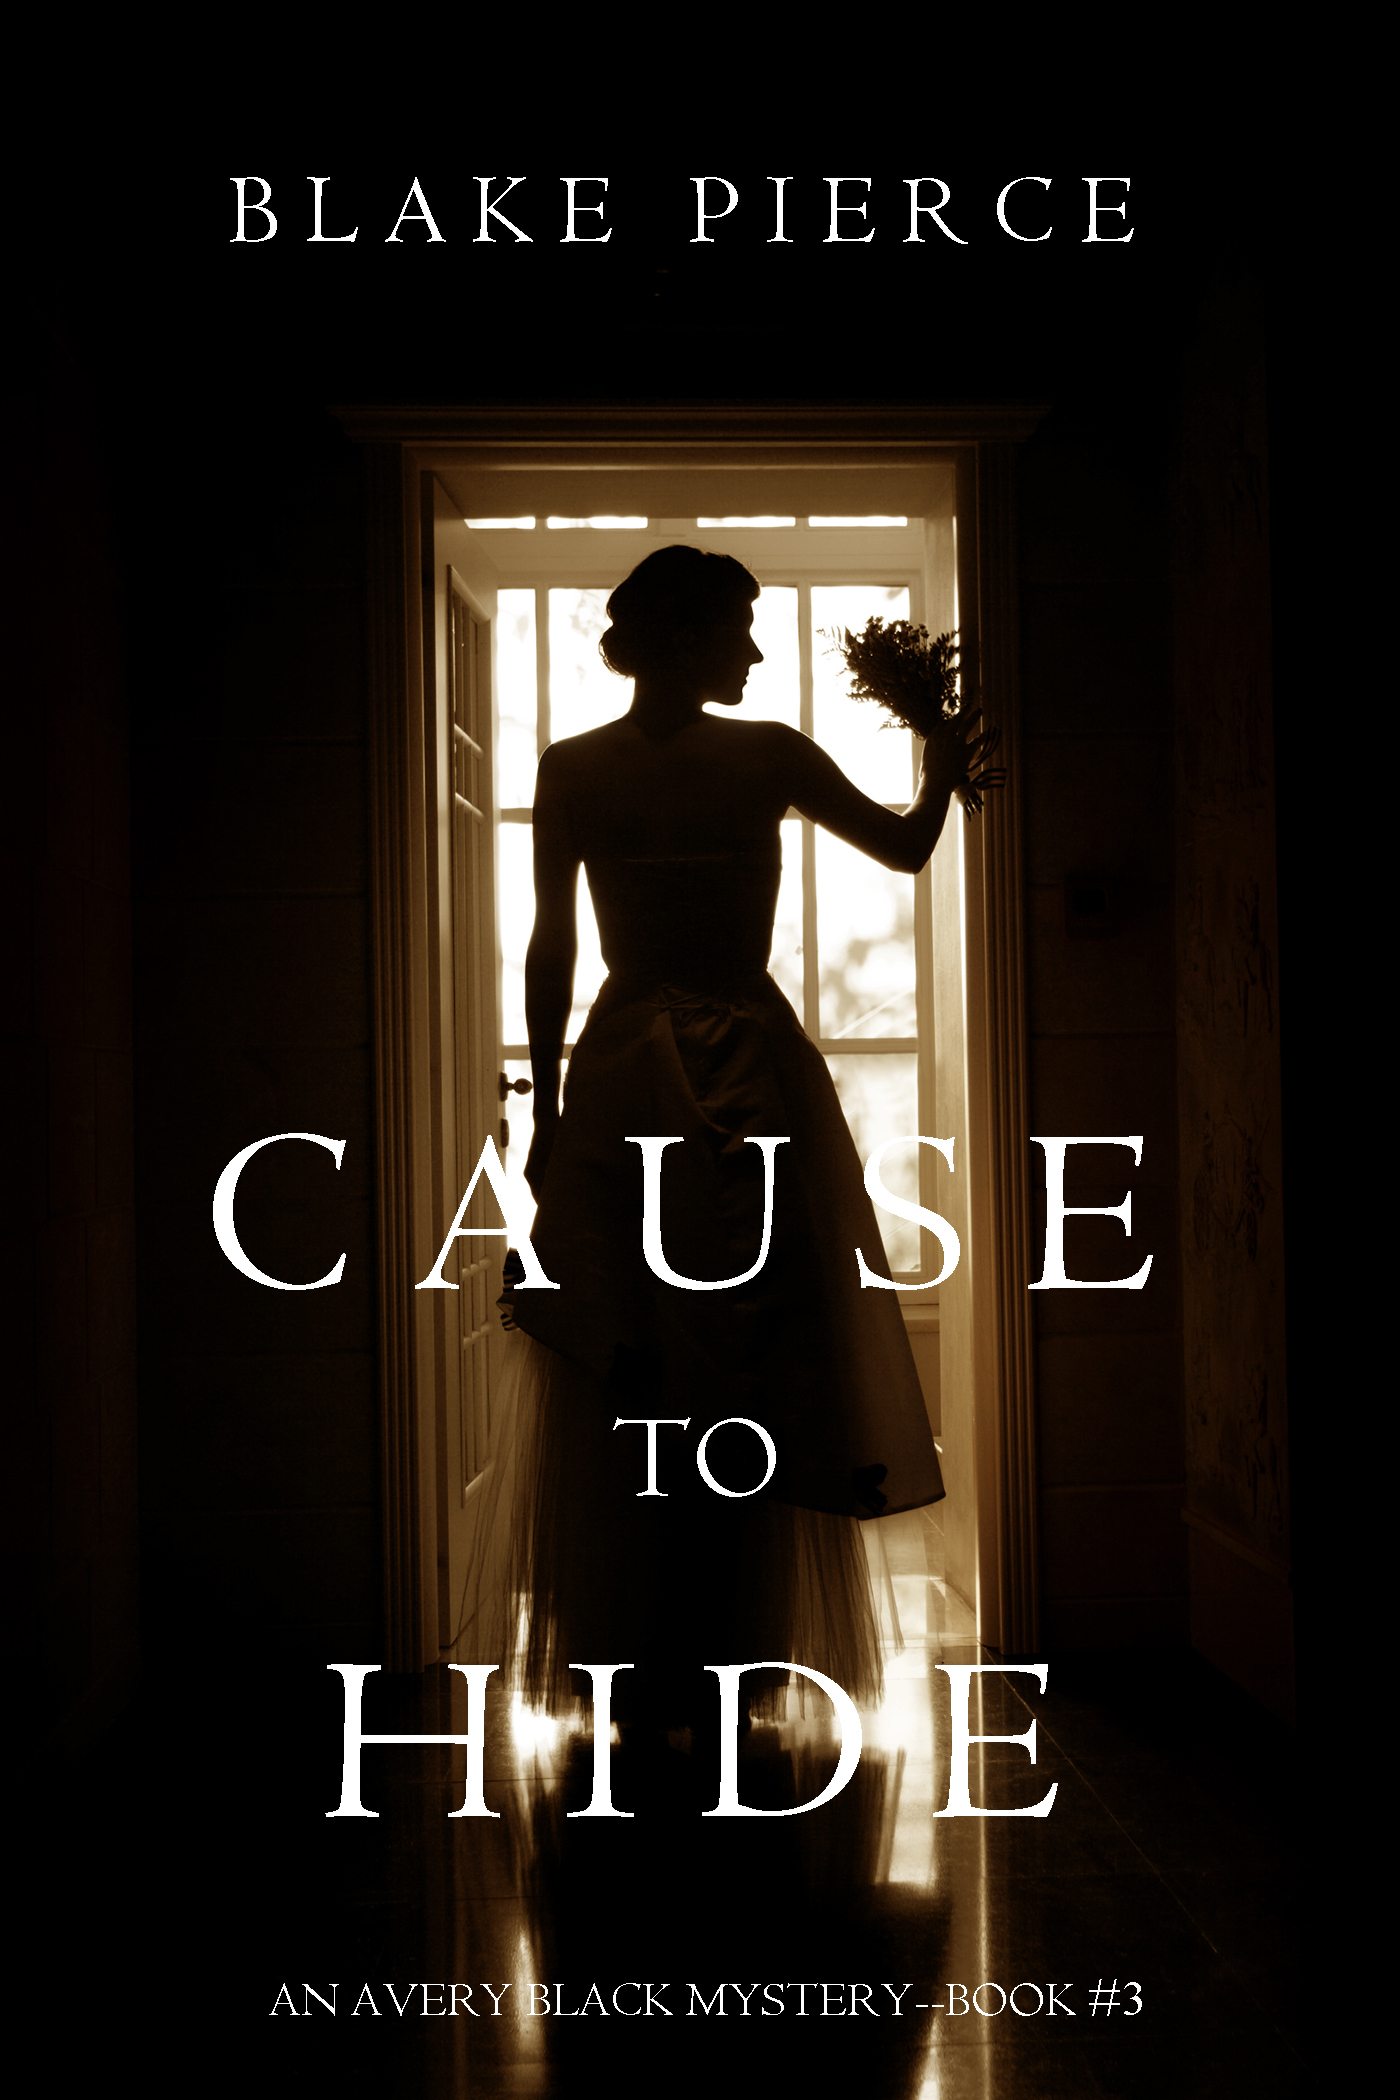 Книга Cause to Hide из серии , созданная Blake Pierce, может относится к жанру Триллеры, Полицейские детективы, Зарубежные детективы, Иностранные языки. Стоимость электронной книги Cause to Hide с идентификатором 23300291 составляет 299.00 руб.